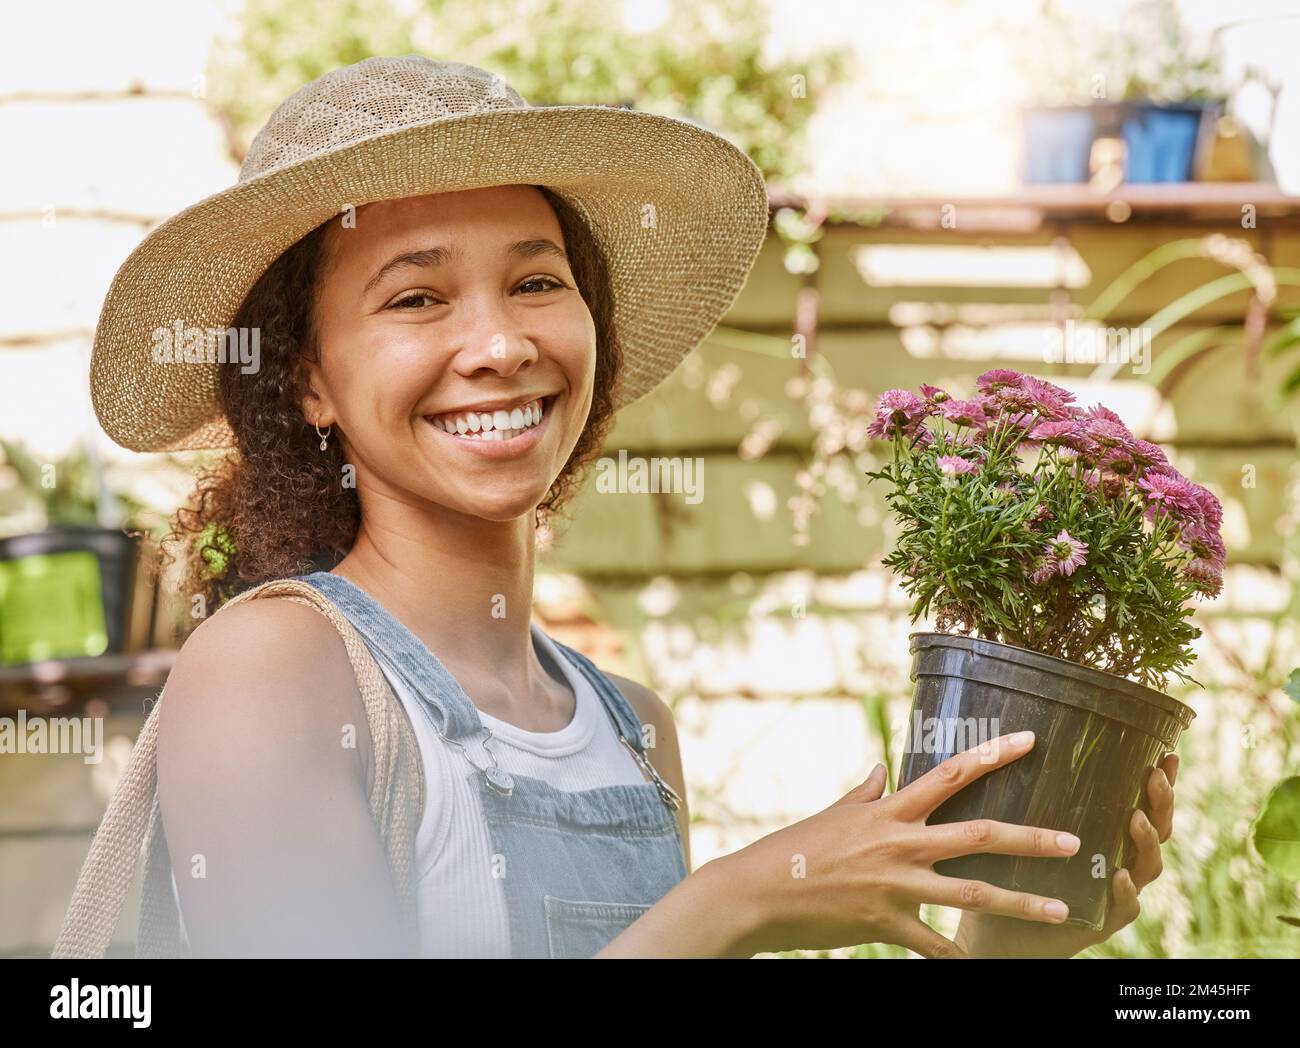 Gesicht, Blumentopf und schwarze Frau, die in einem Blumenladen oder Kinderzimmer einkaufen. Porträt, Nachhaltigkeit und glückliche Gärtnerin aus Südafrika mit Stockfoto